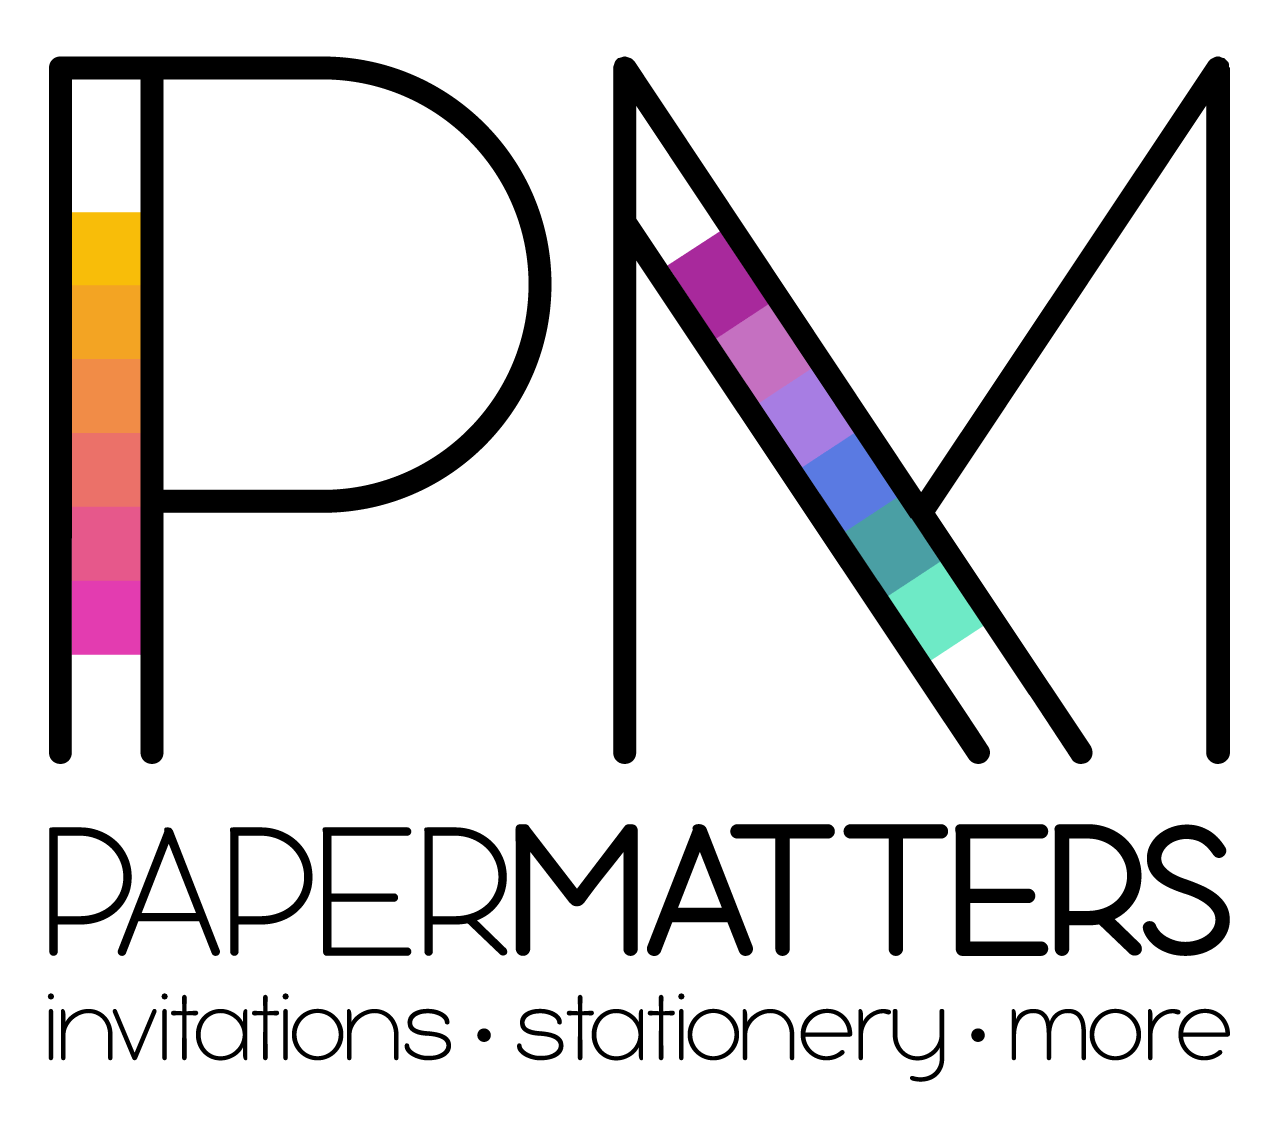 Paper Matters